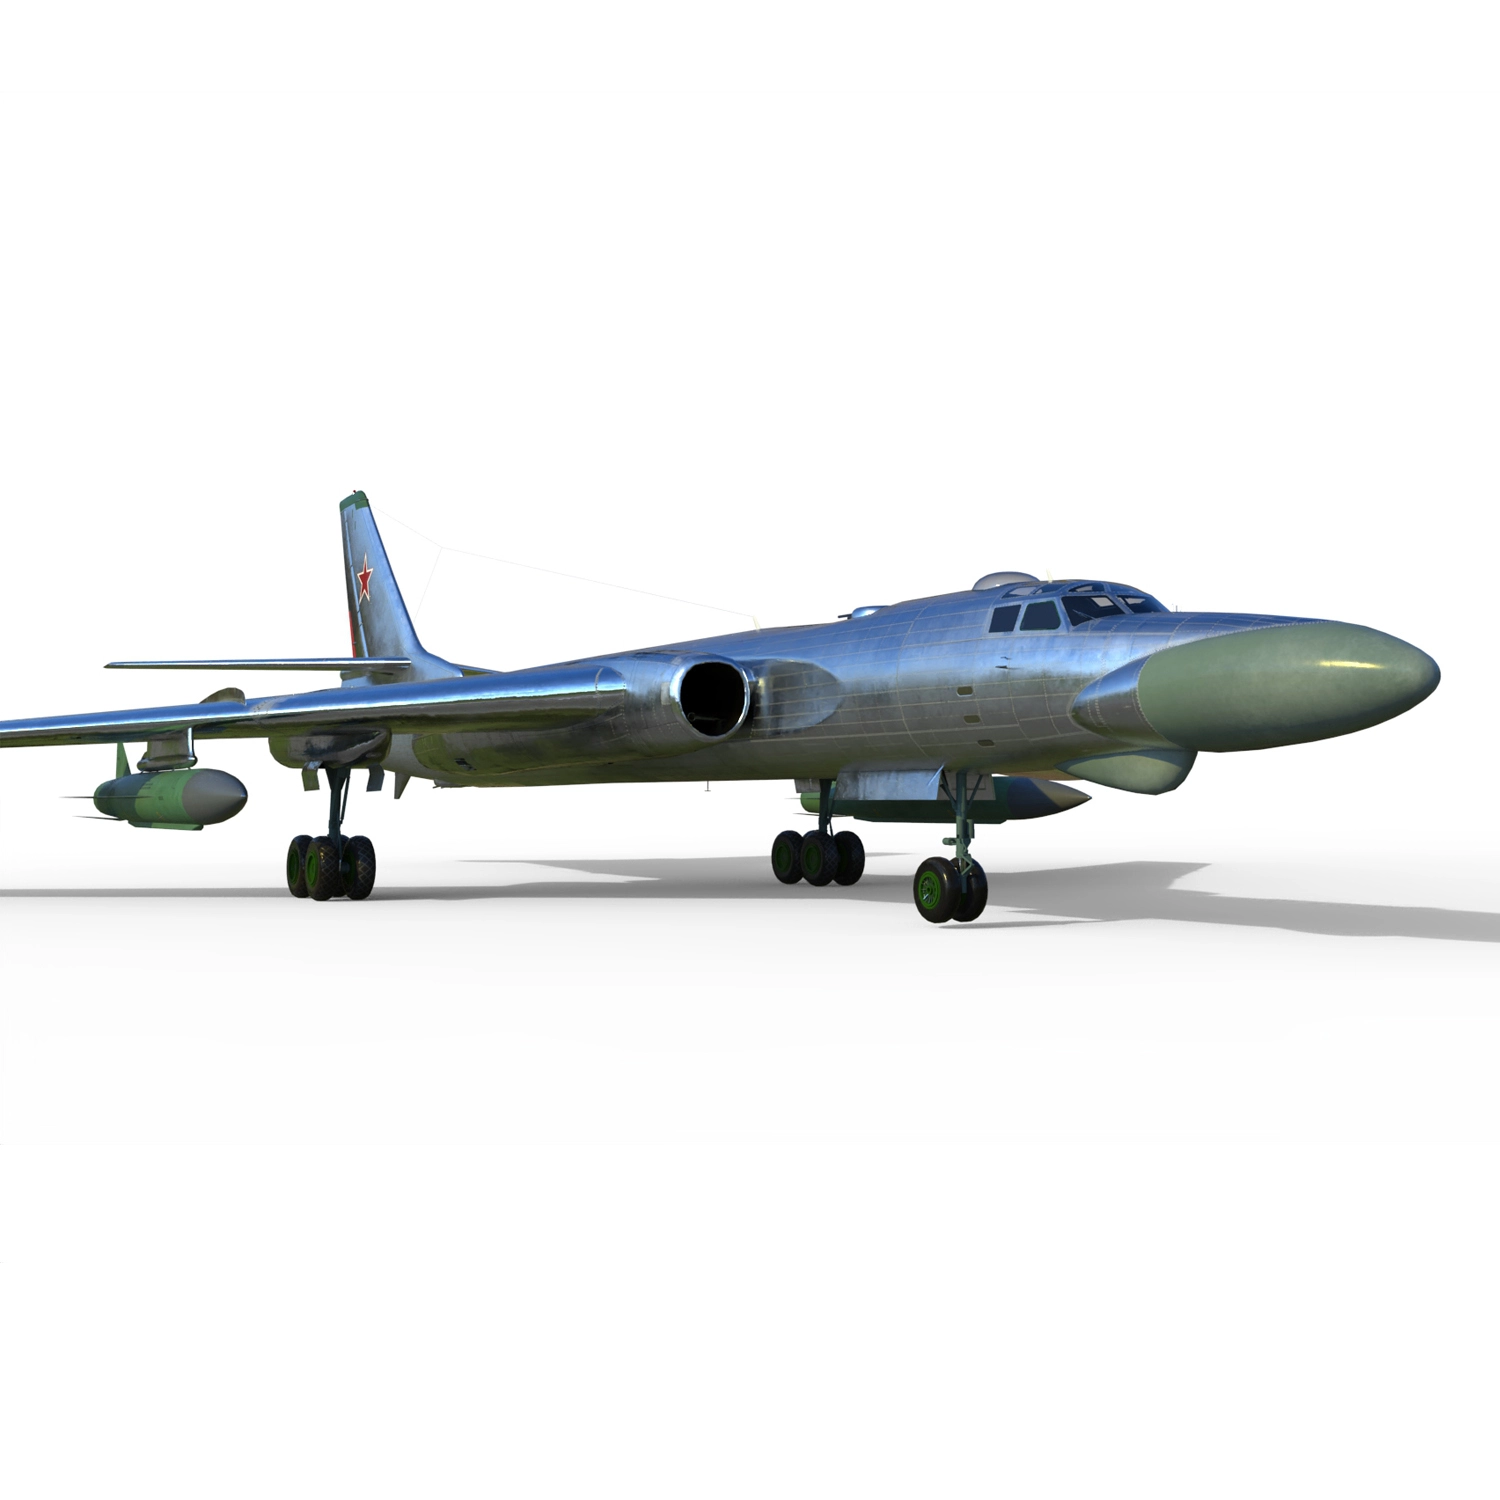 Сборная модель тяжелого реактивного бомбардировщика Tu-16K-26 Badger G/Китайский H-6